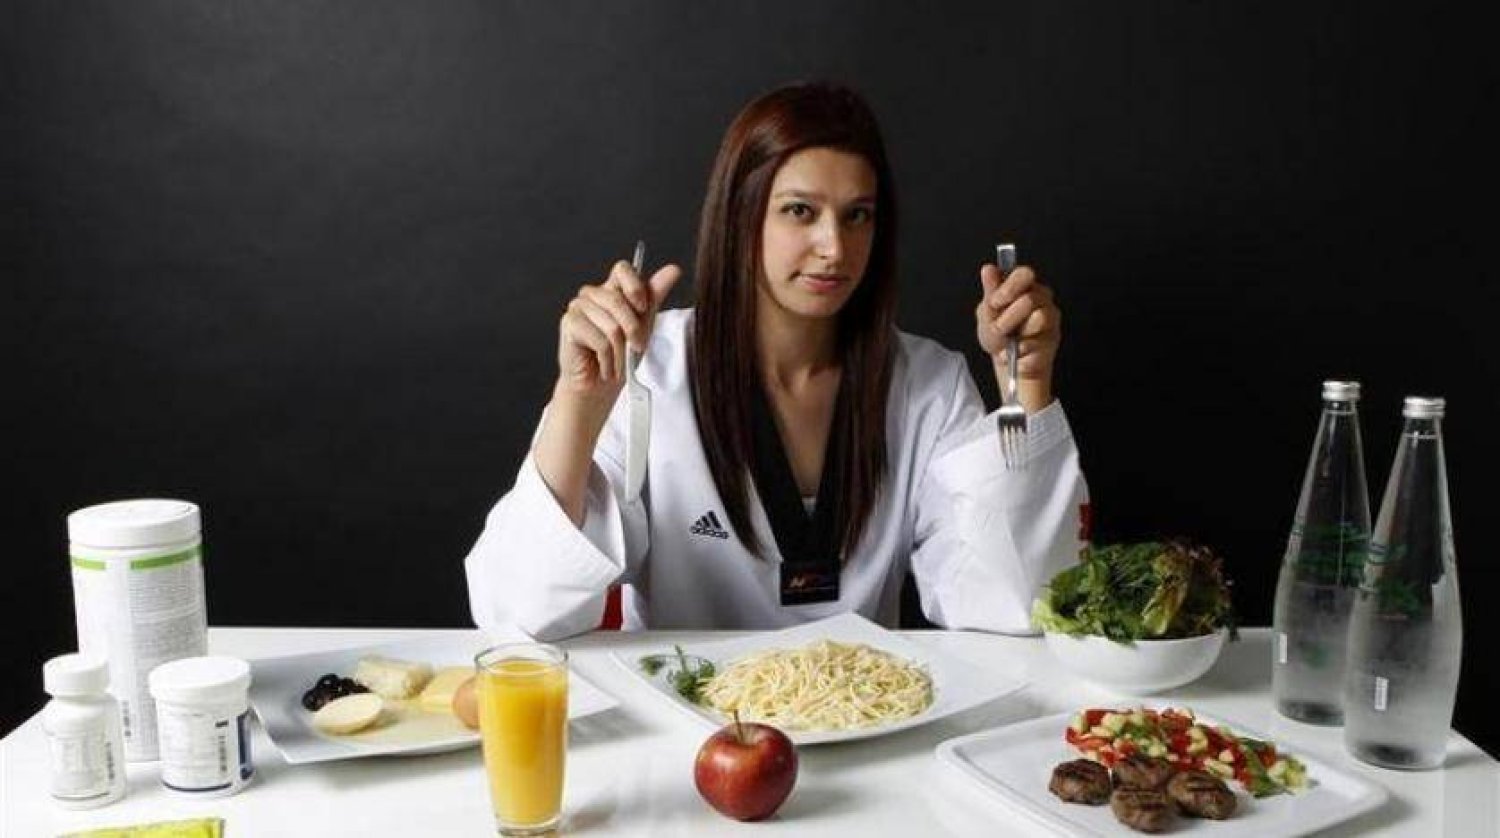 النظام الغذائي الذي نتبعه يمكن أن يؤثر على أدمغتنا  (رويترز)